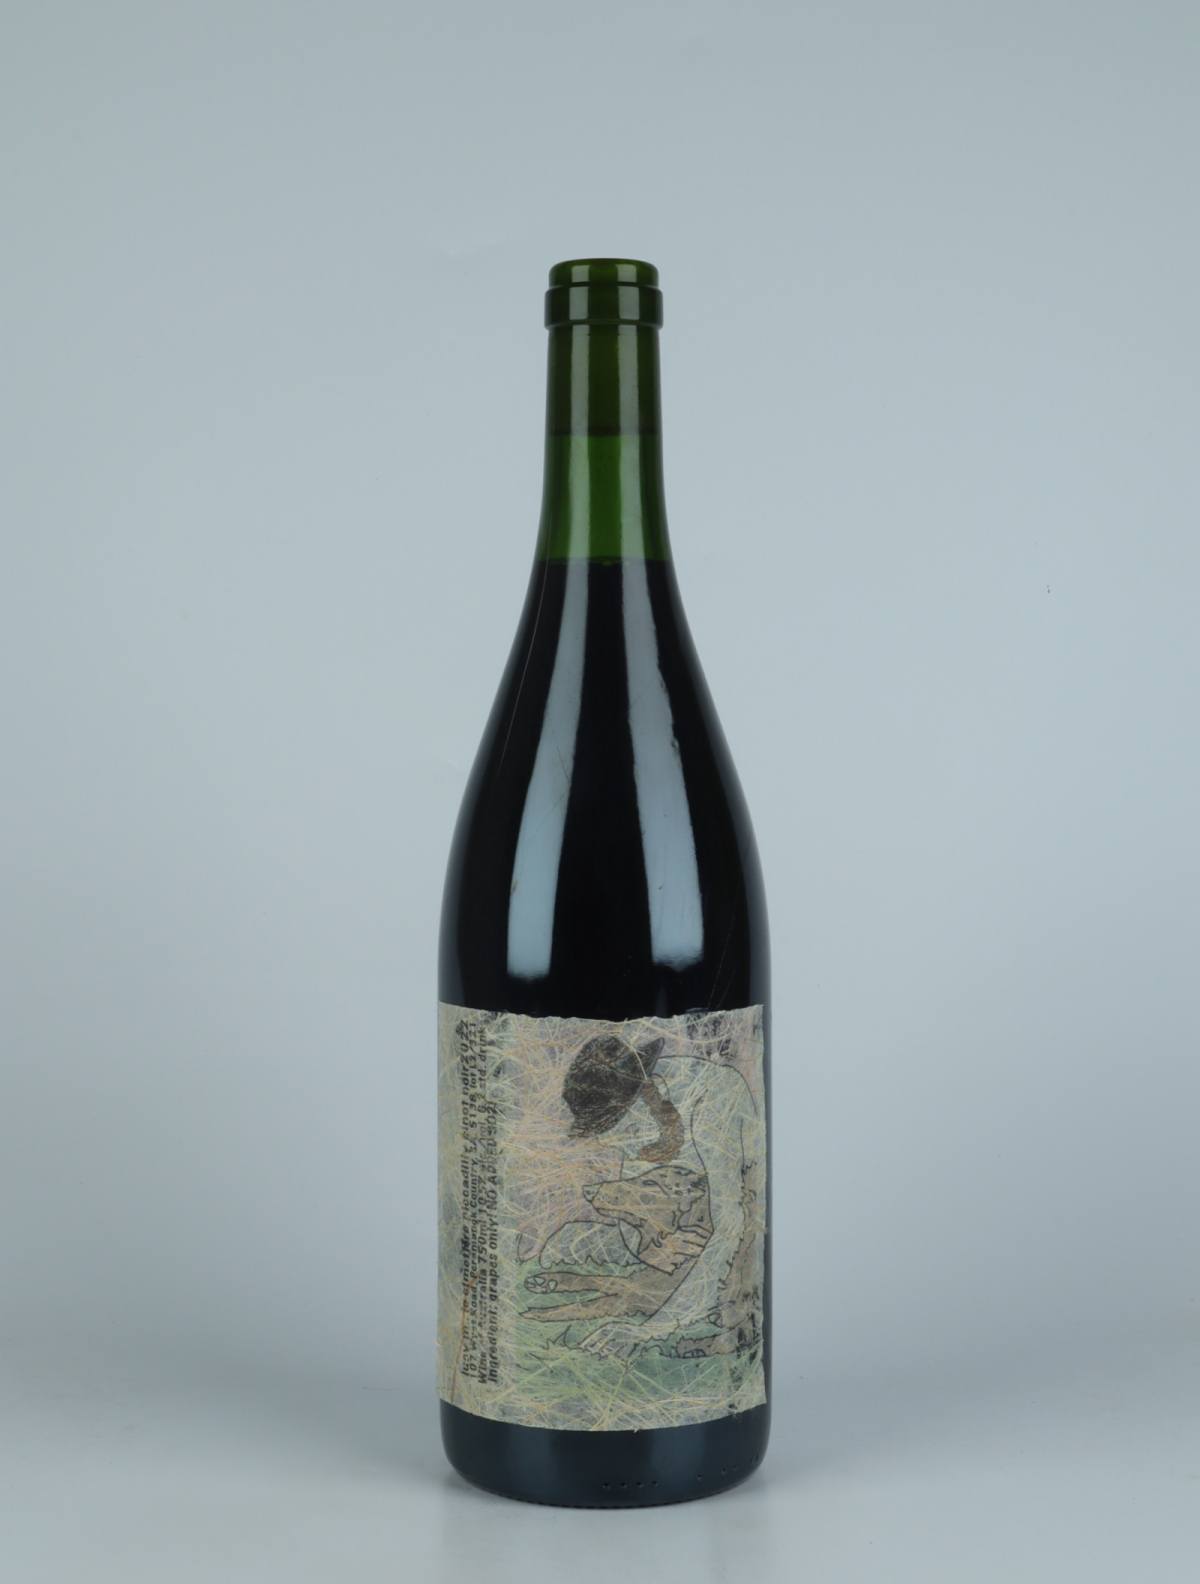 En flaske 2022 Le Cimetière Piccadilly Pinot Noir Rødvin fra Lucy Margaux, Adelaide Hills i Australien